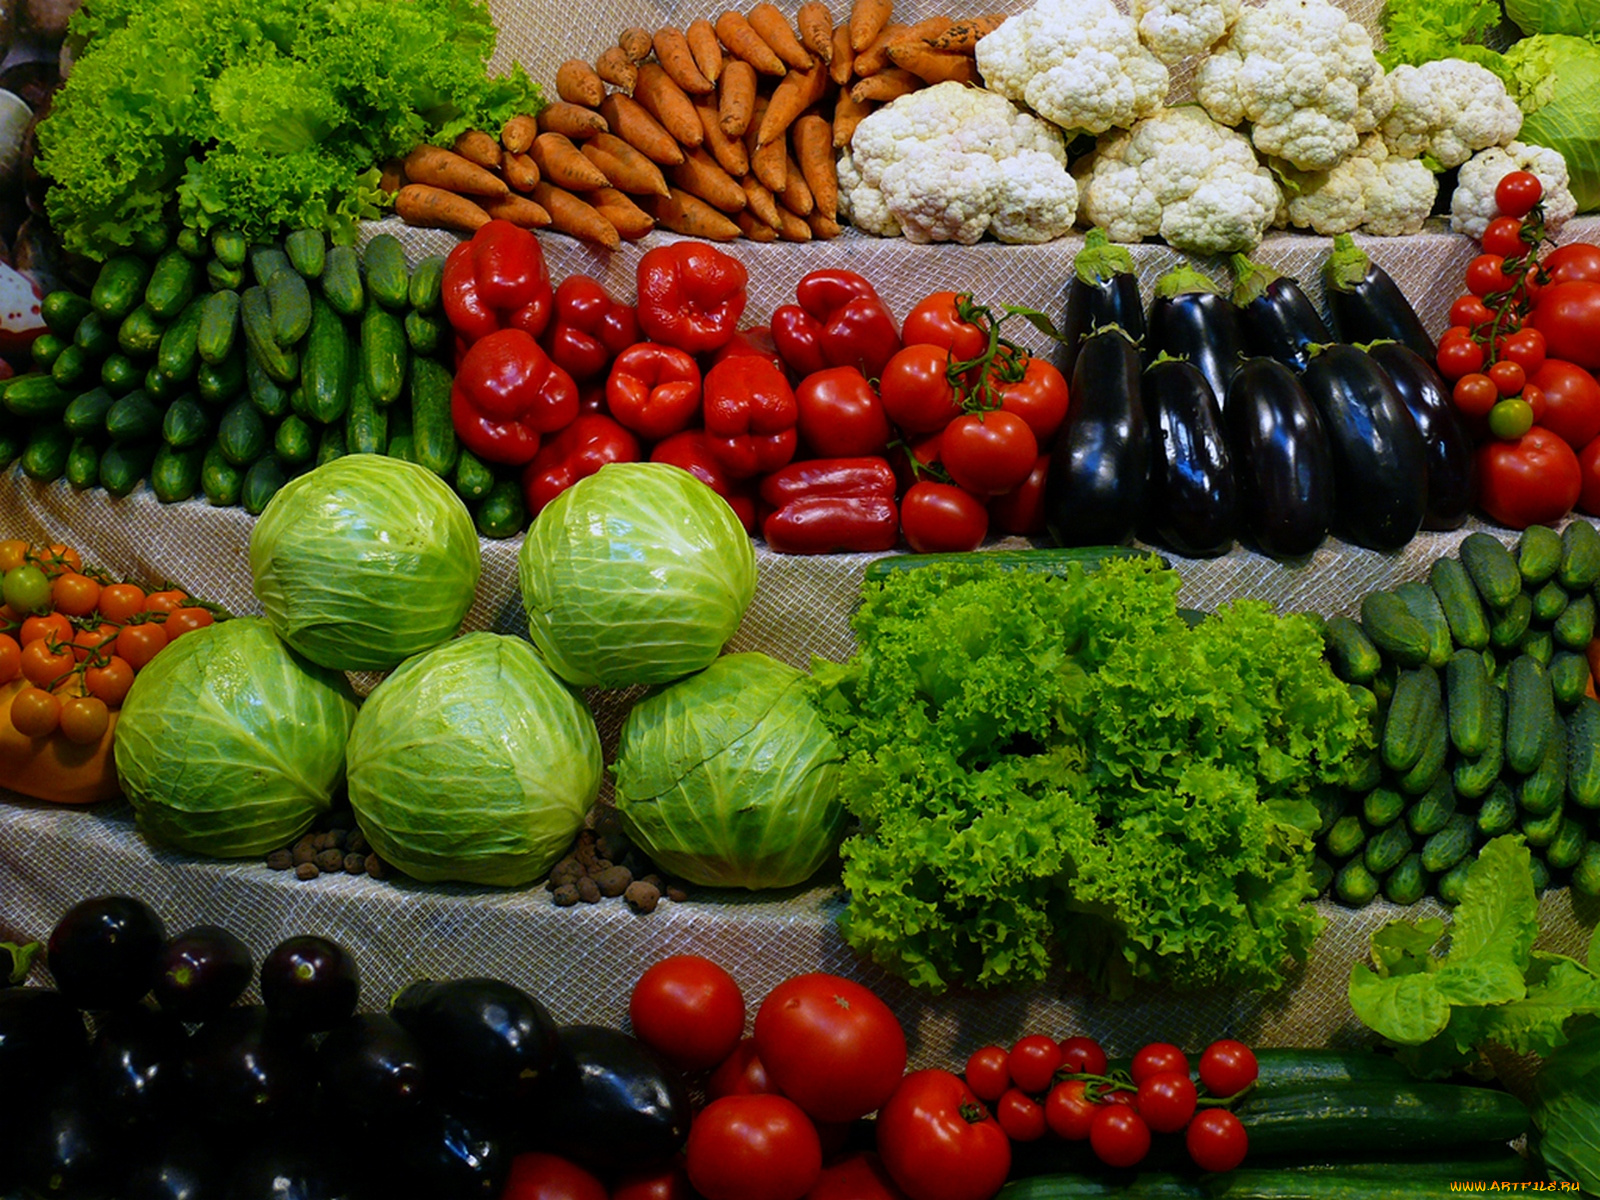 еда, овощи, болгарский, перец, помидор, брокколи, кукуруза, имбирь, маис, цветная, капуста, красный, оранжевый, зелёный, белый, фон, томаты